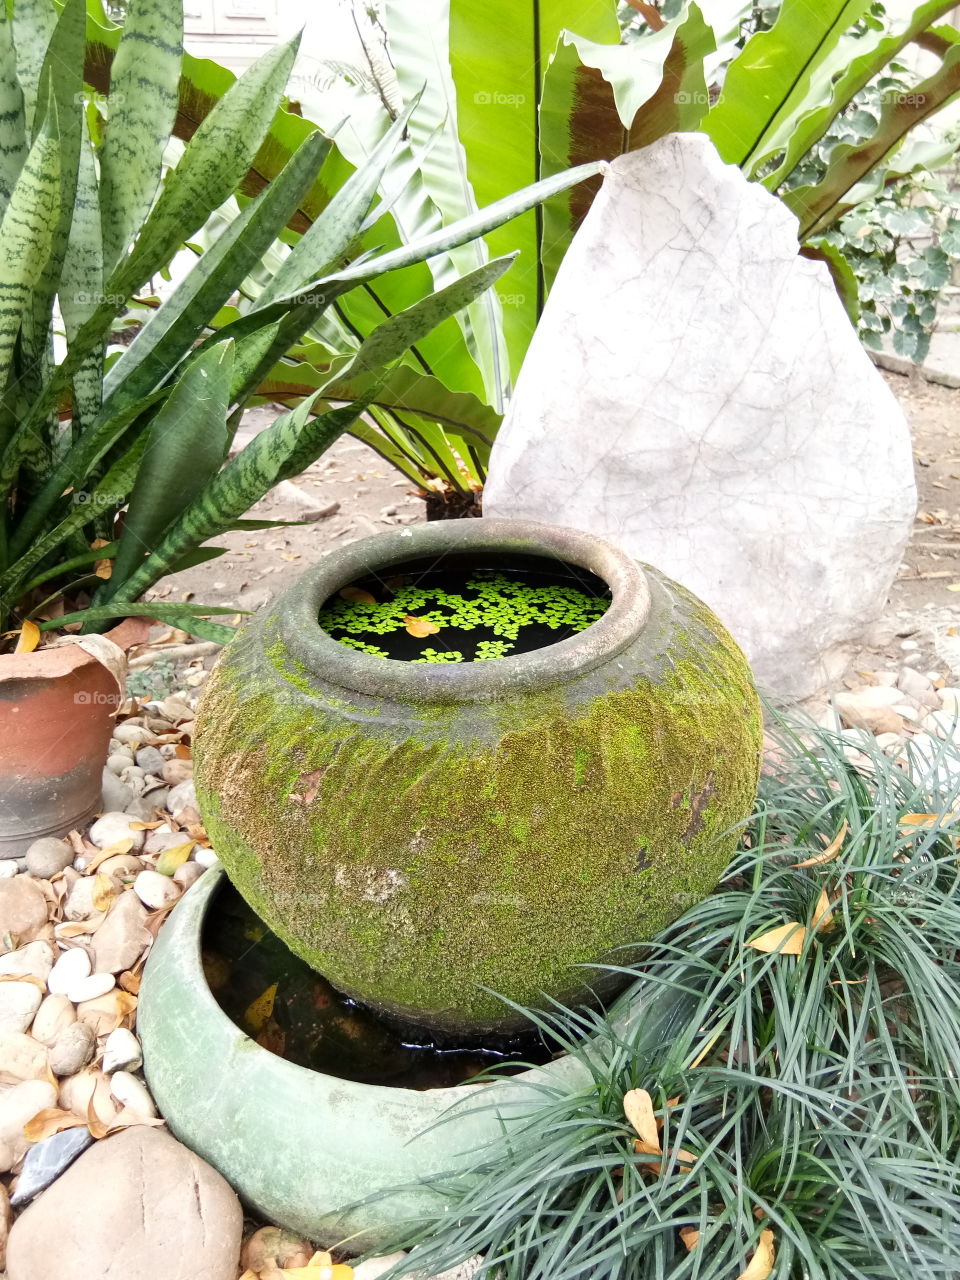 garden arrangement
decor
stone
tree
old
pot
water
moss